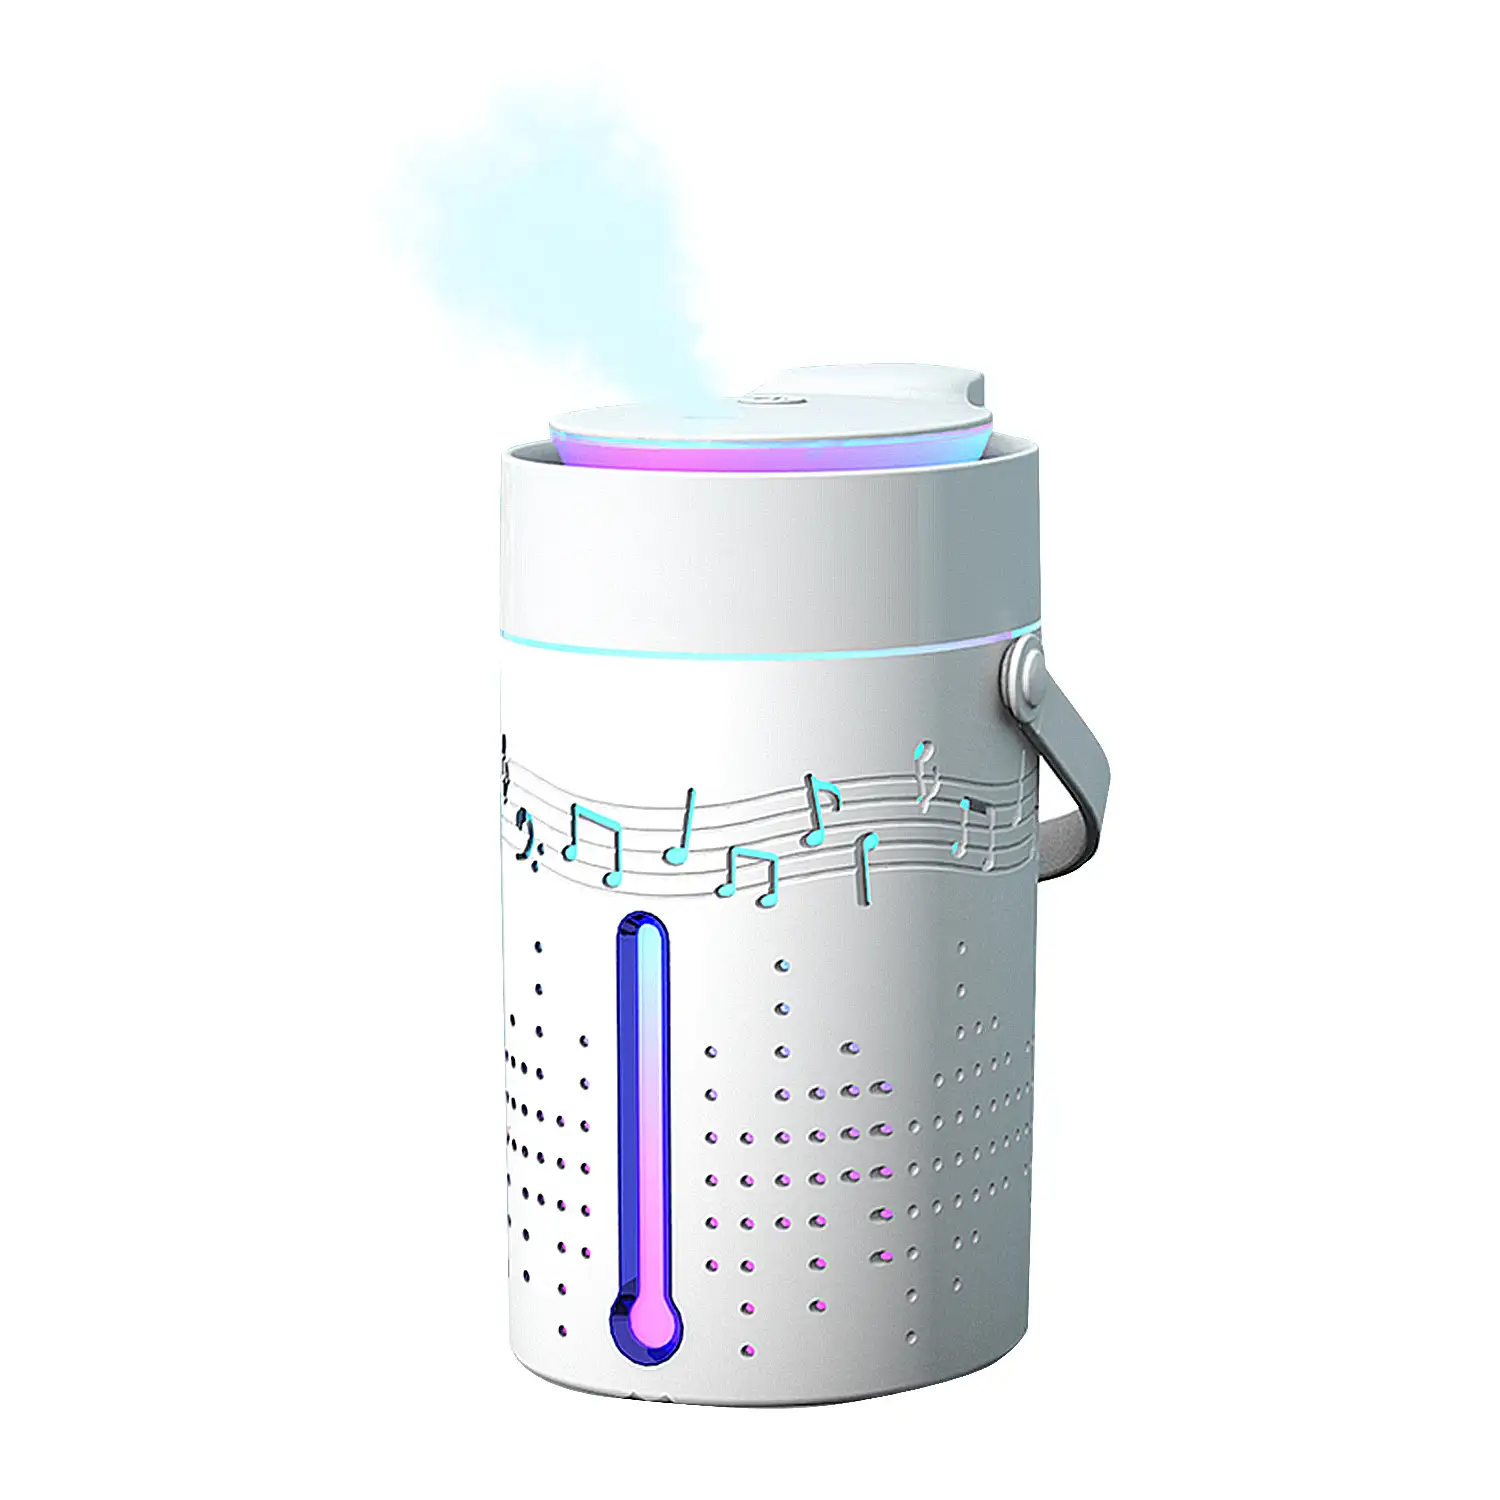 Nebulizador esterilizador multifunción (admite hidroalcohol) 1000 ml. Con altavoz bluetooth incorporado.